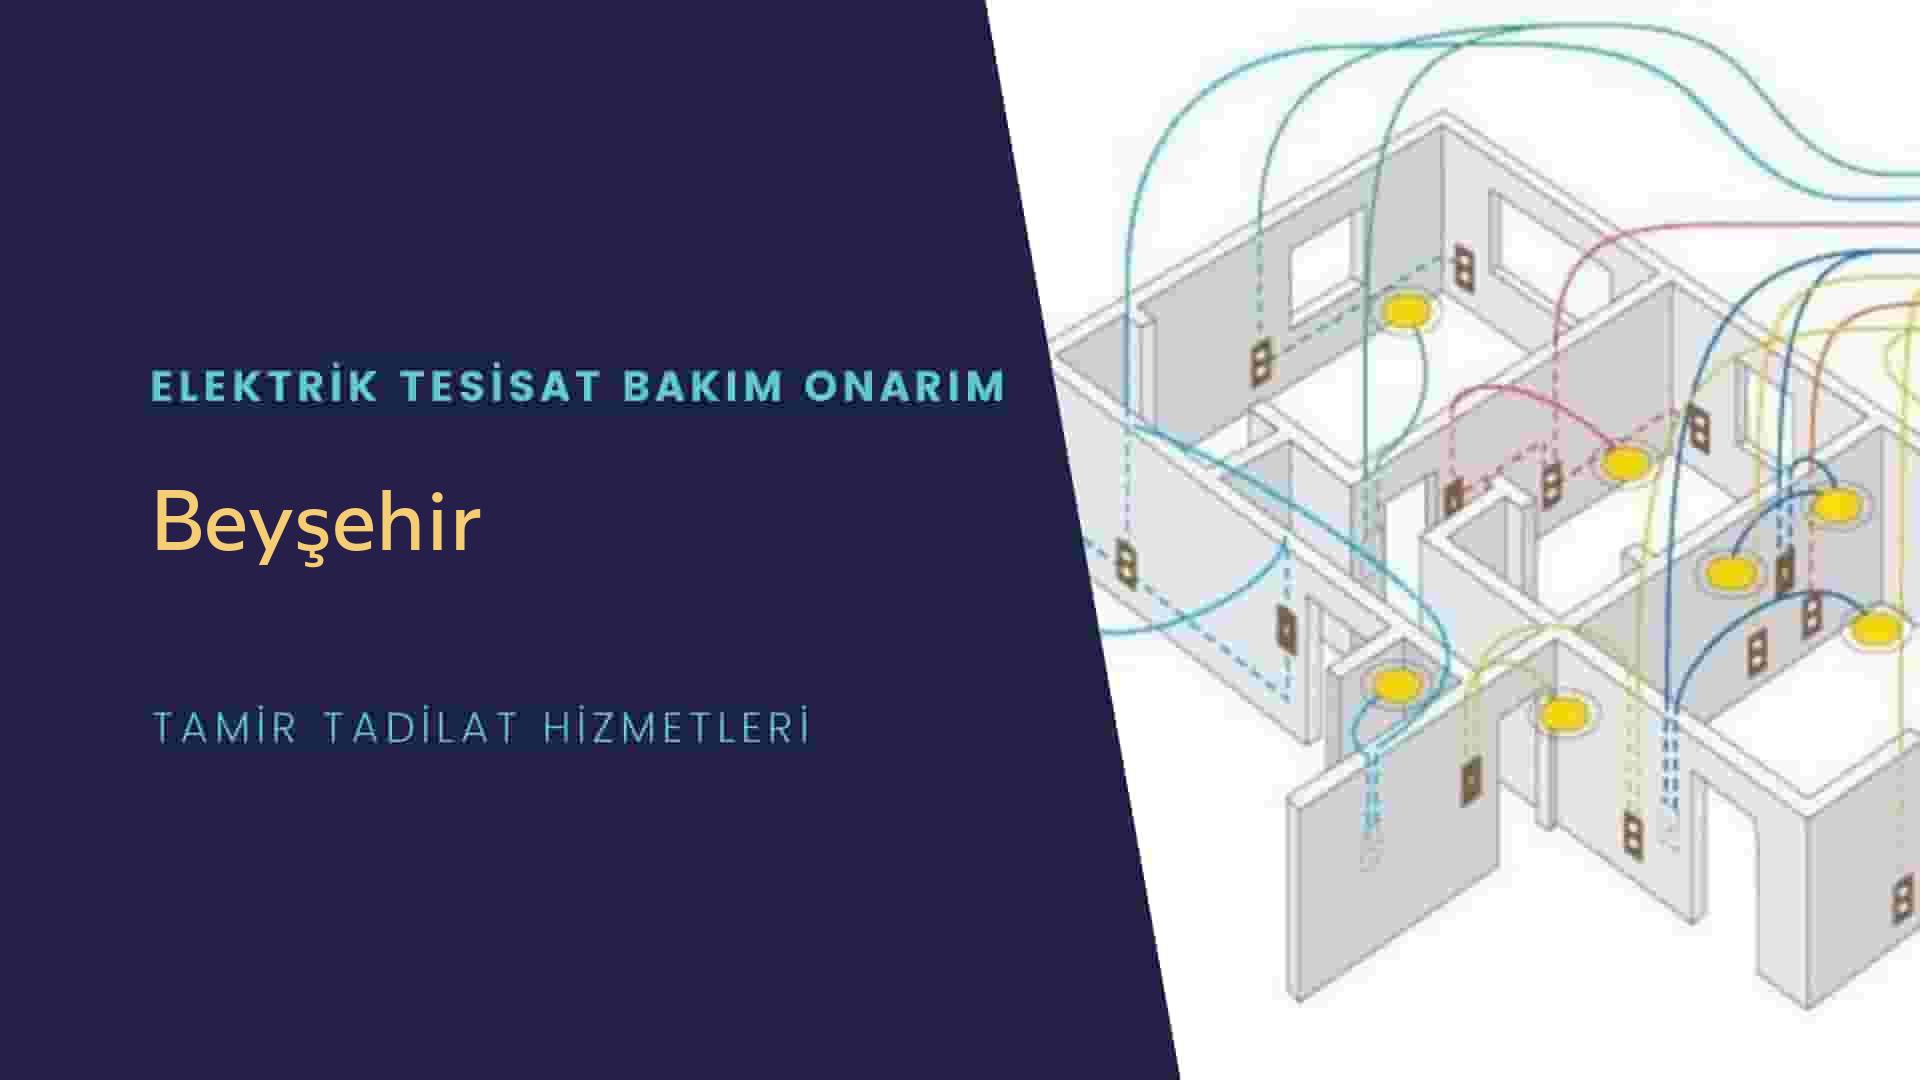 Beyşehir'de elektrik tesisatı ustalarımı arıyorsunuz doğru adrestenizi Beyşehir elektrik tesisatı ustalarımız 7/24 sizlere hizmet vermekten mutluluk duyar.